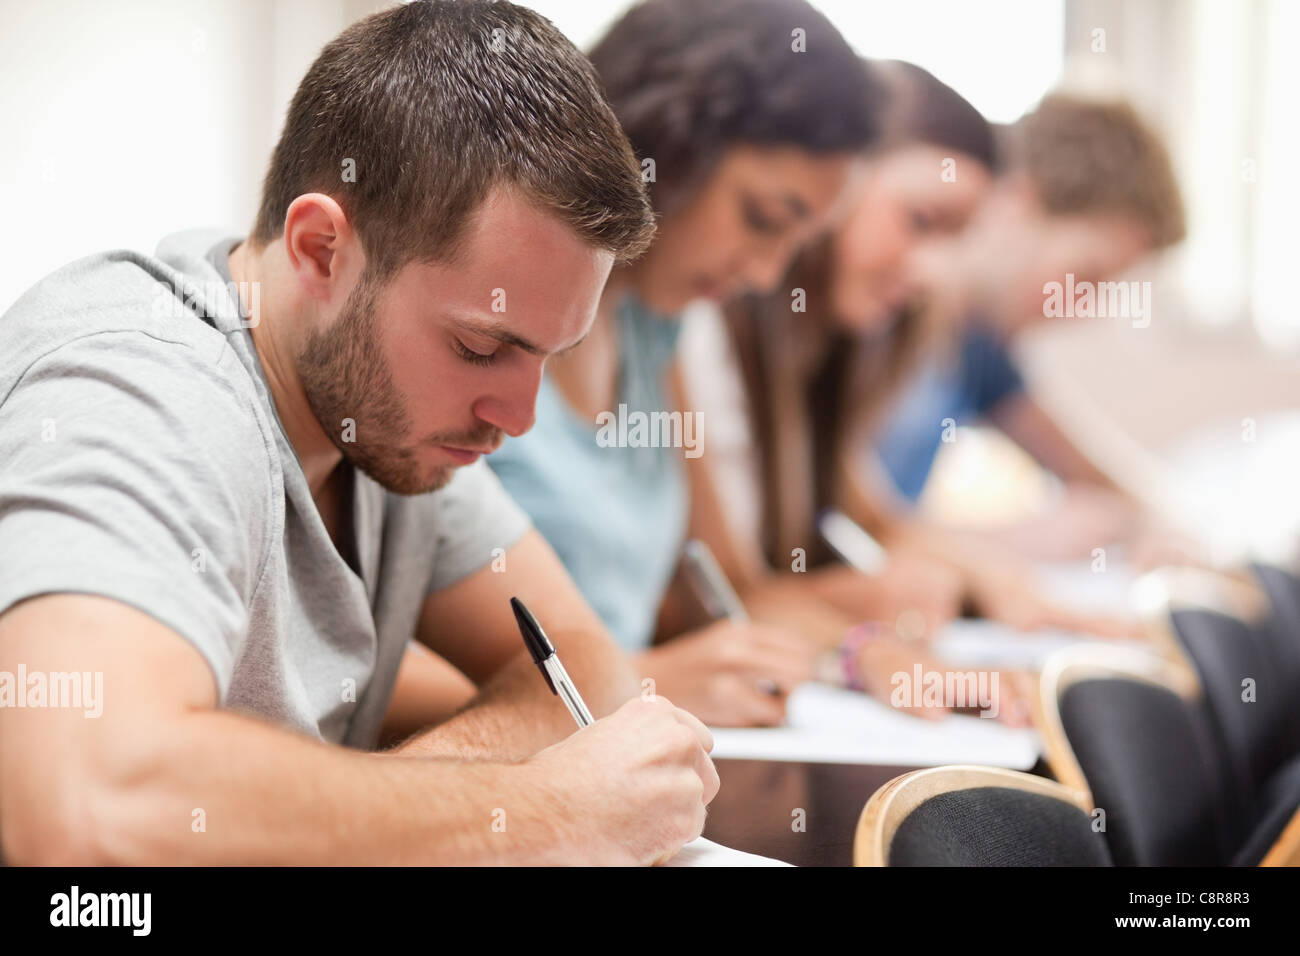 Los estudiantes serios sentada durante un examen Foto de stock